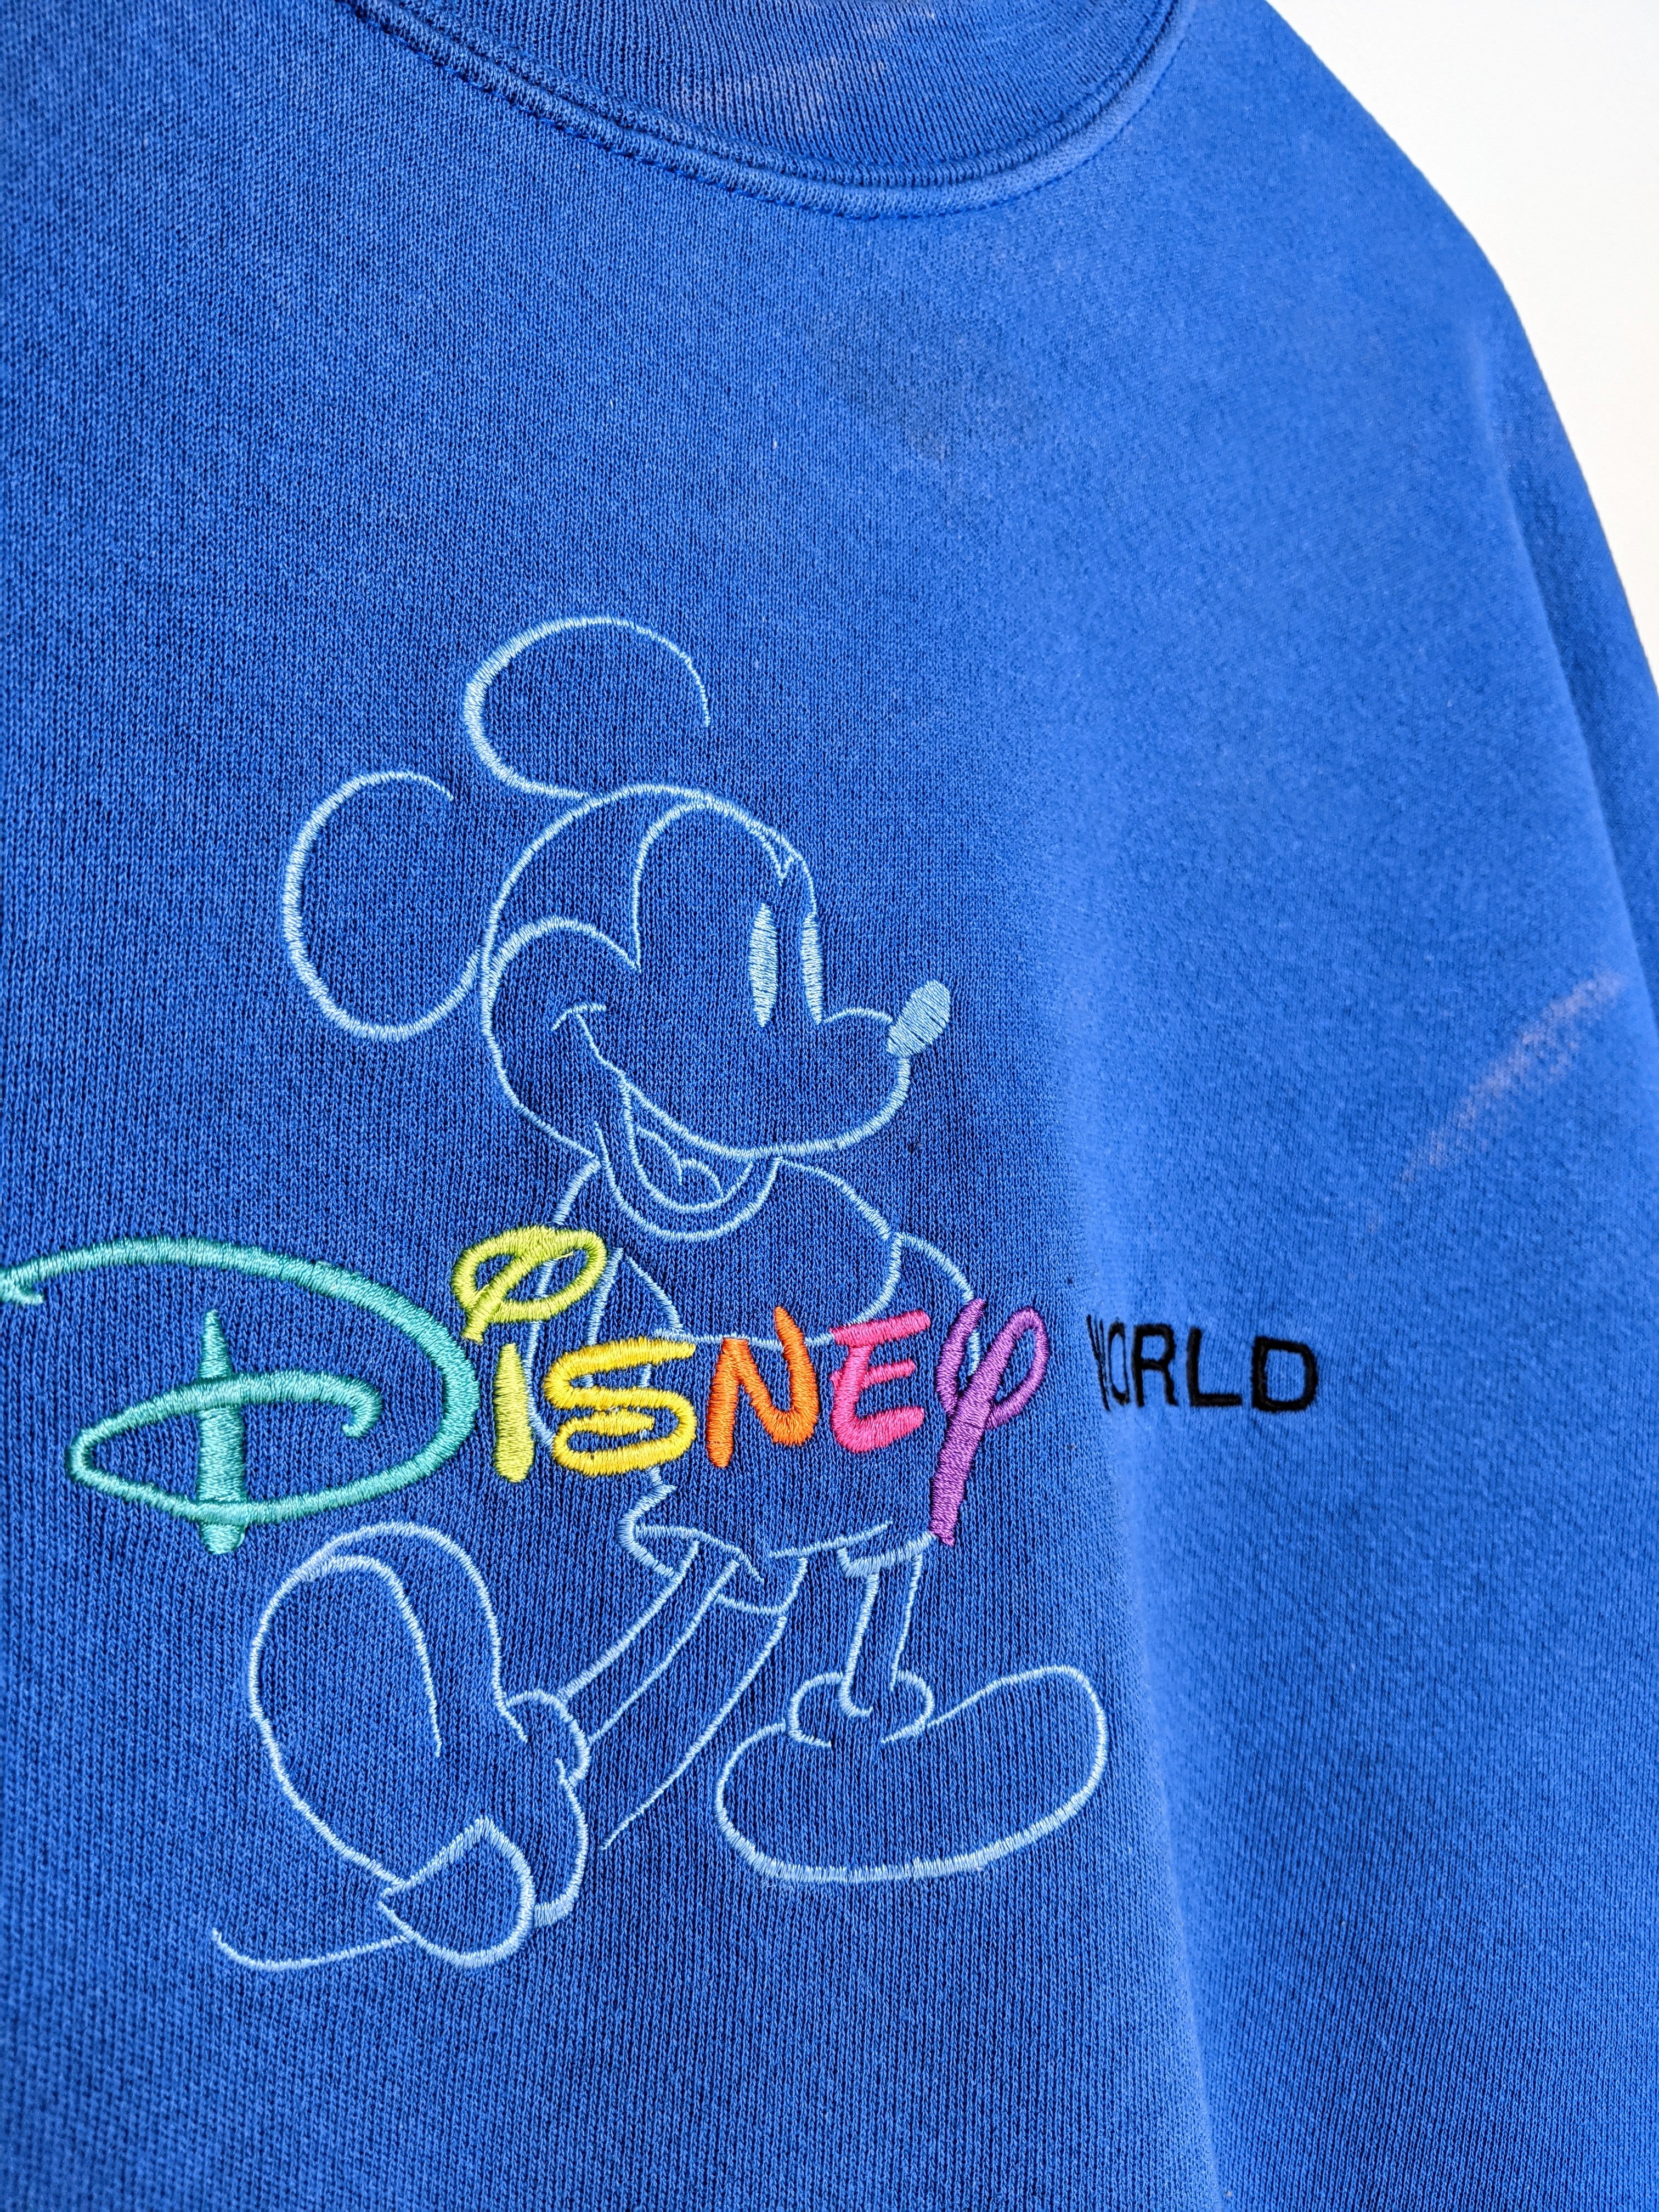 Walt Disney World Sweatshirt XL)